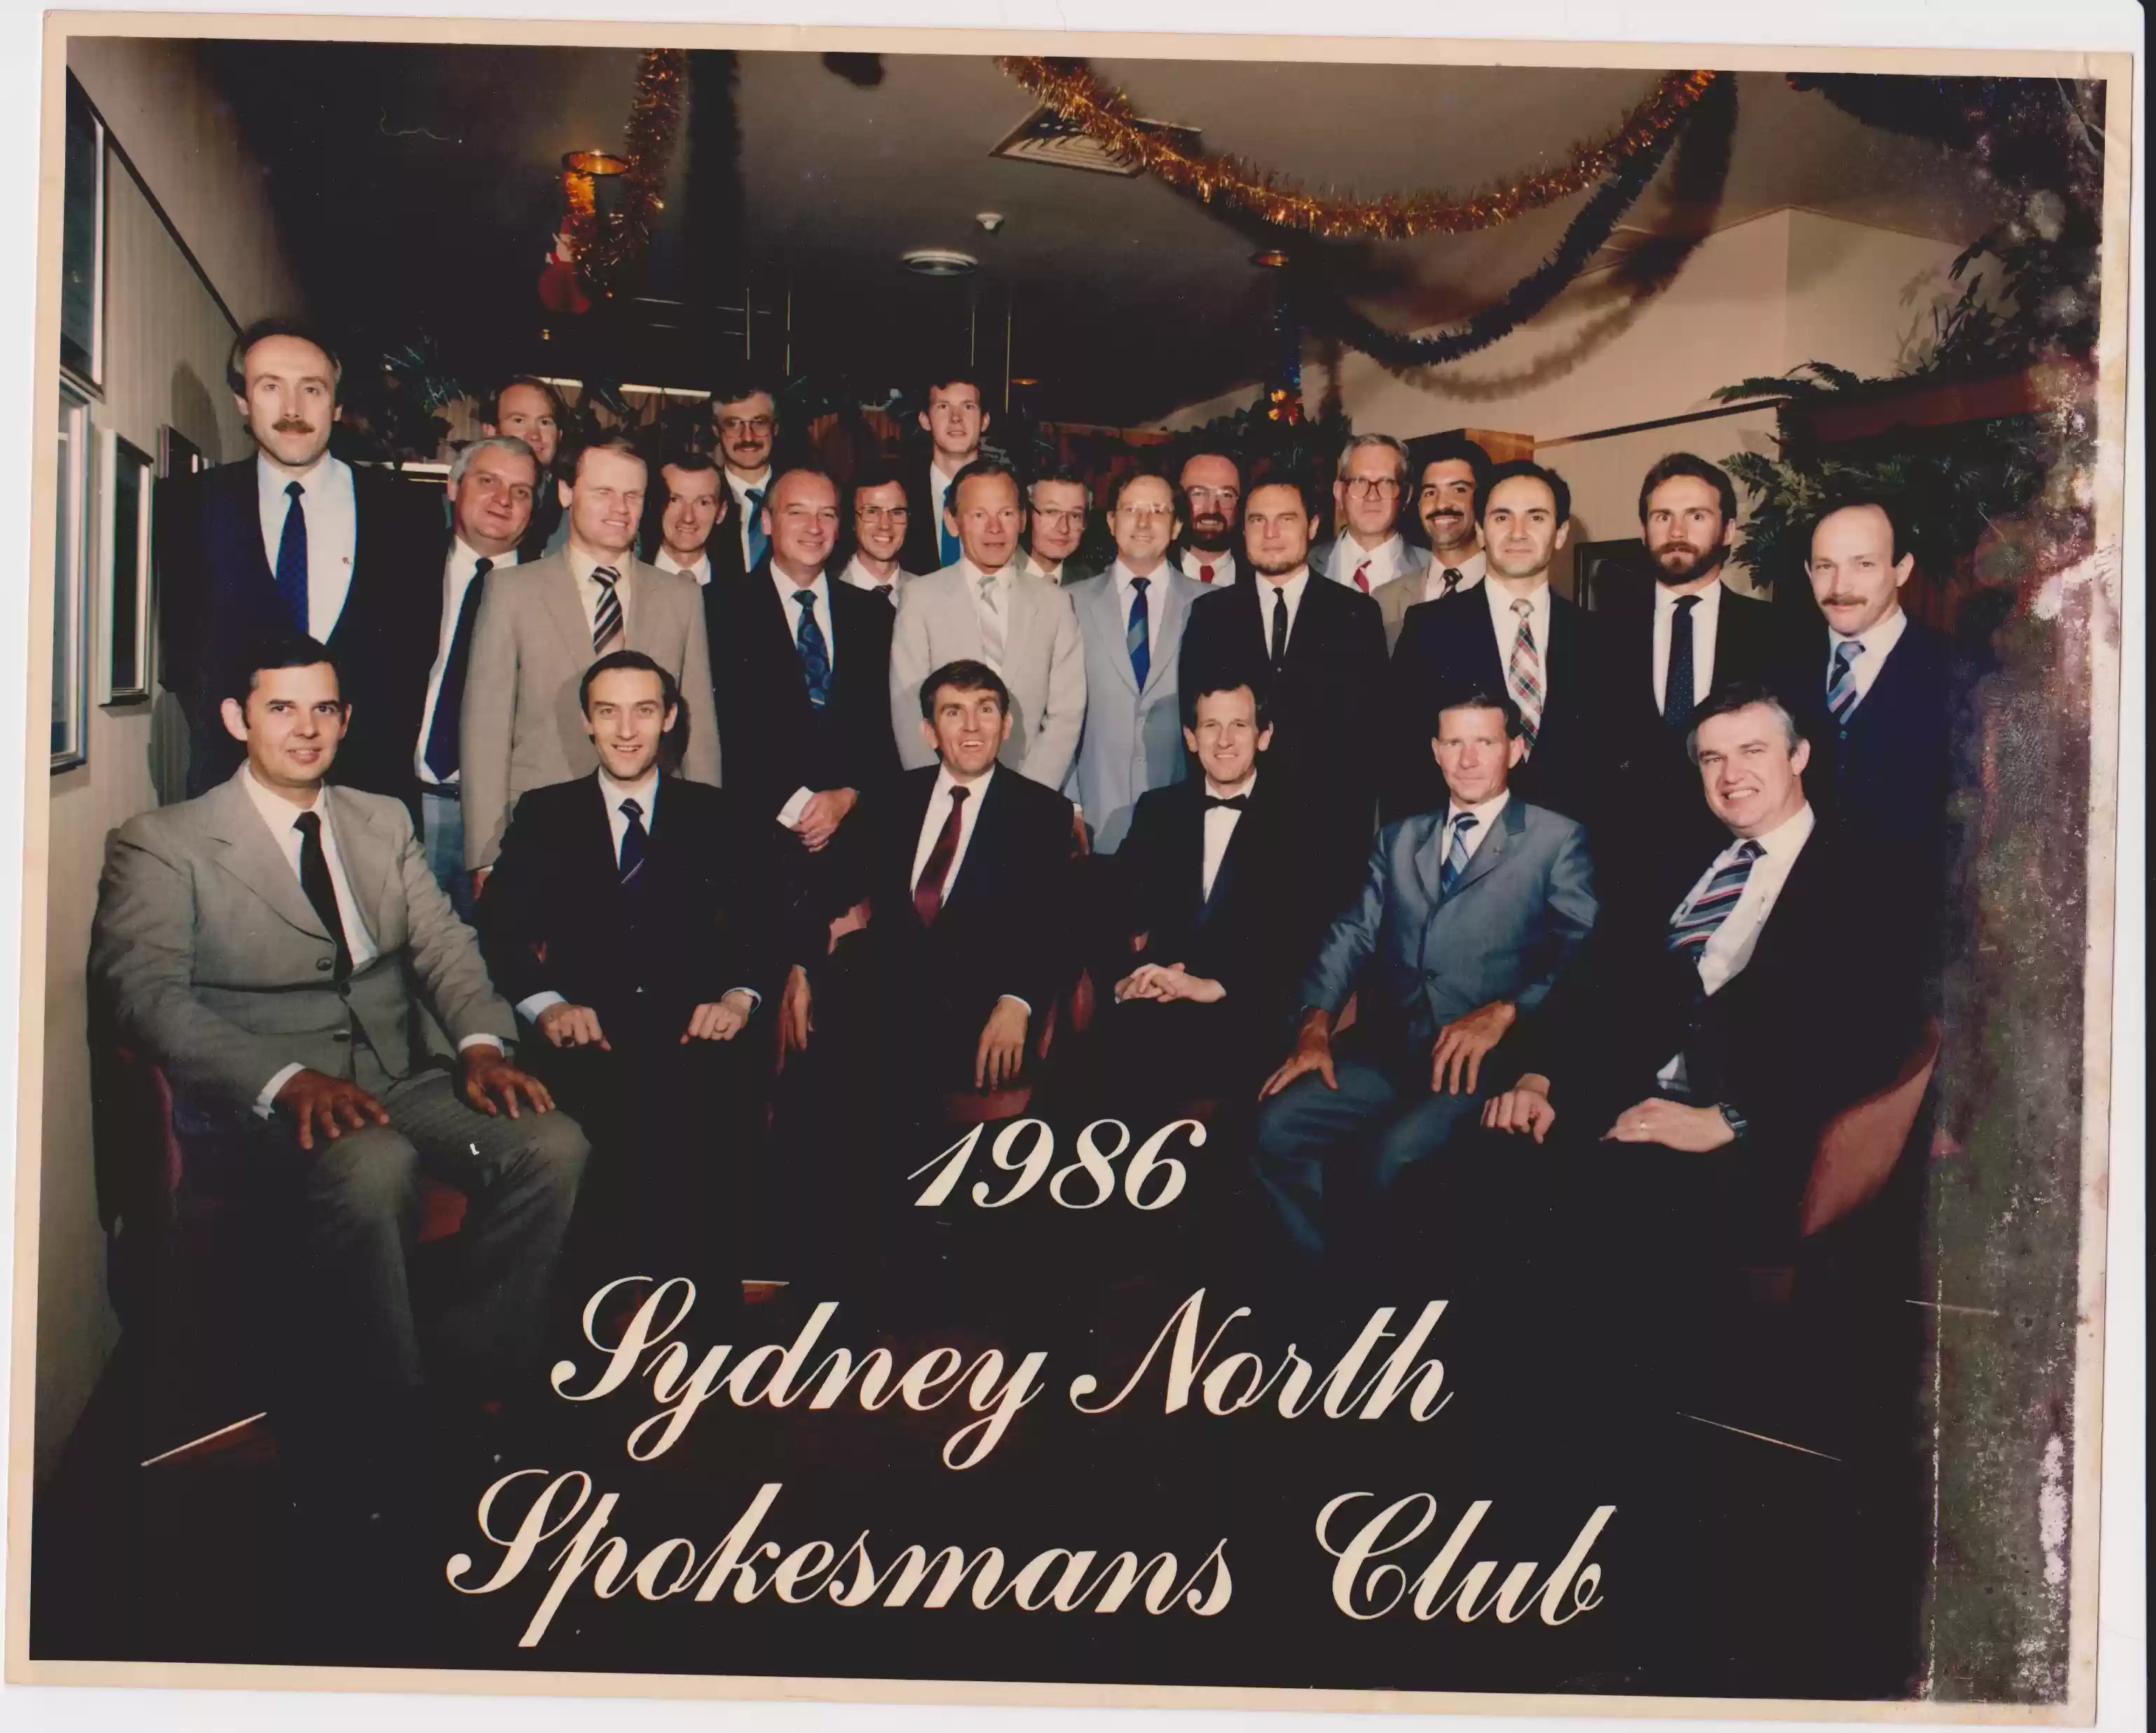 1986 Spokesman's Club